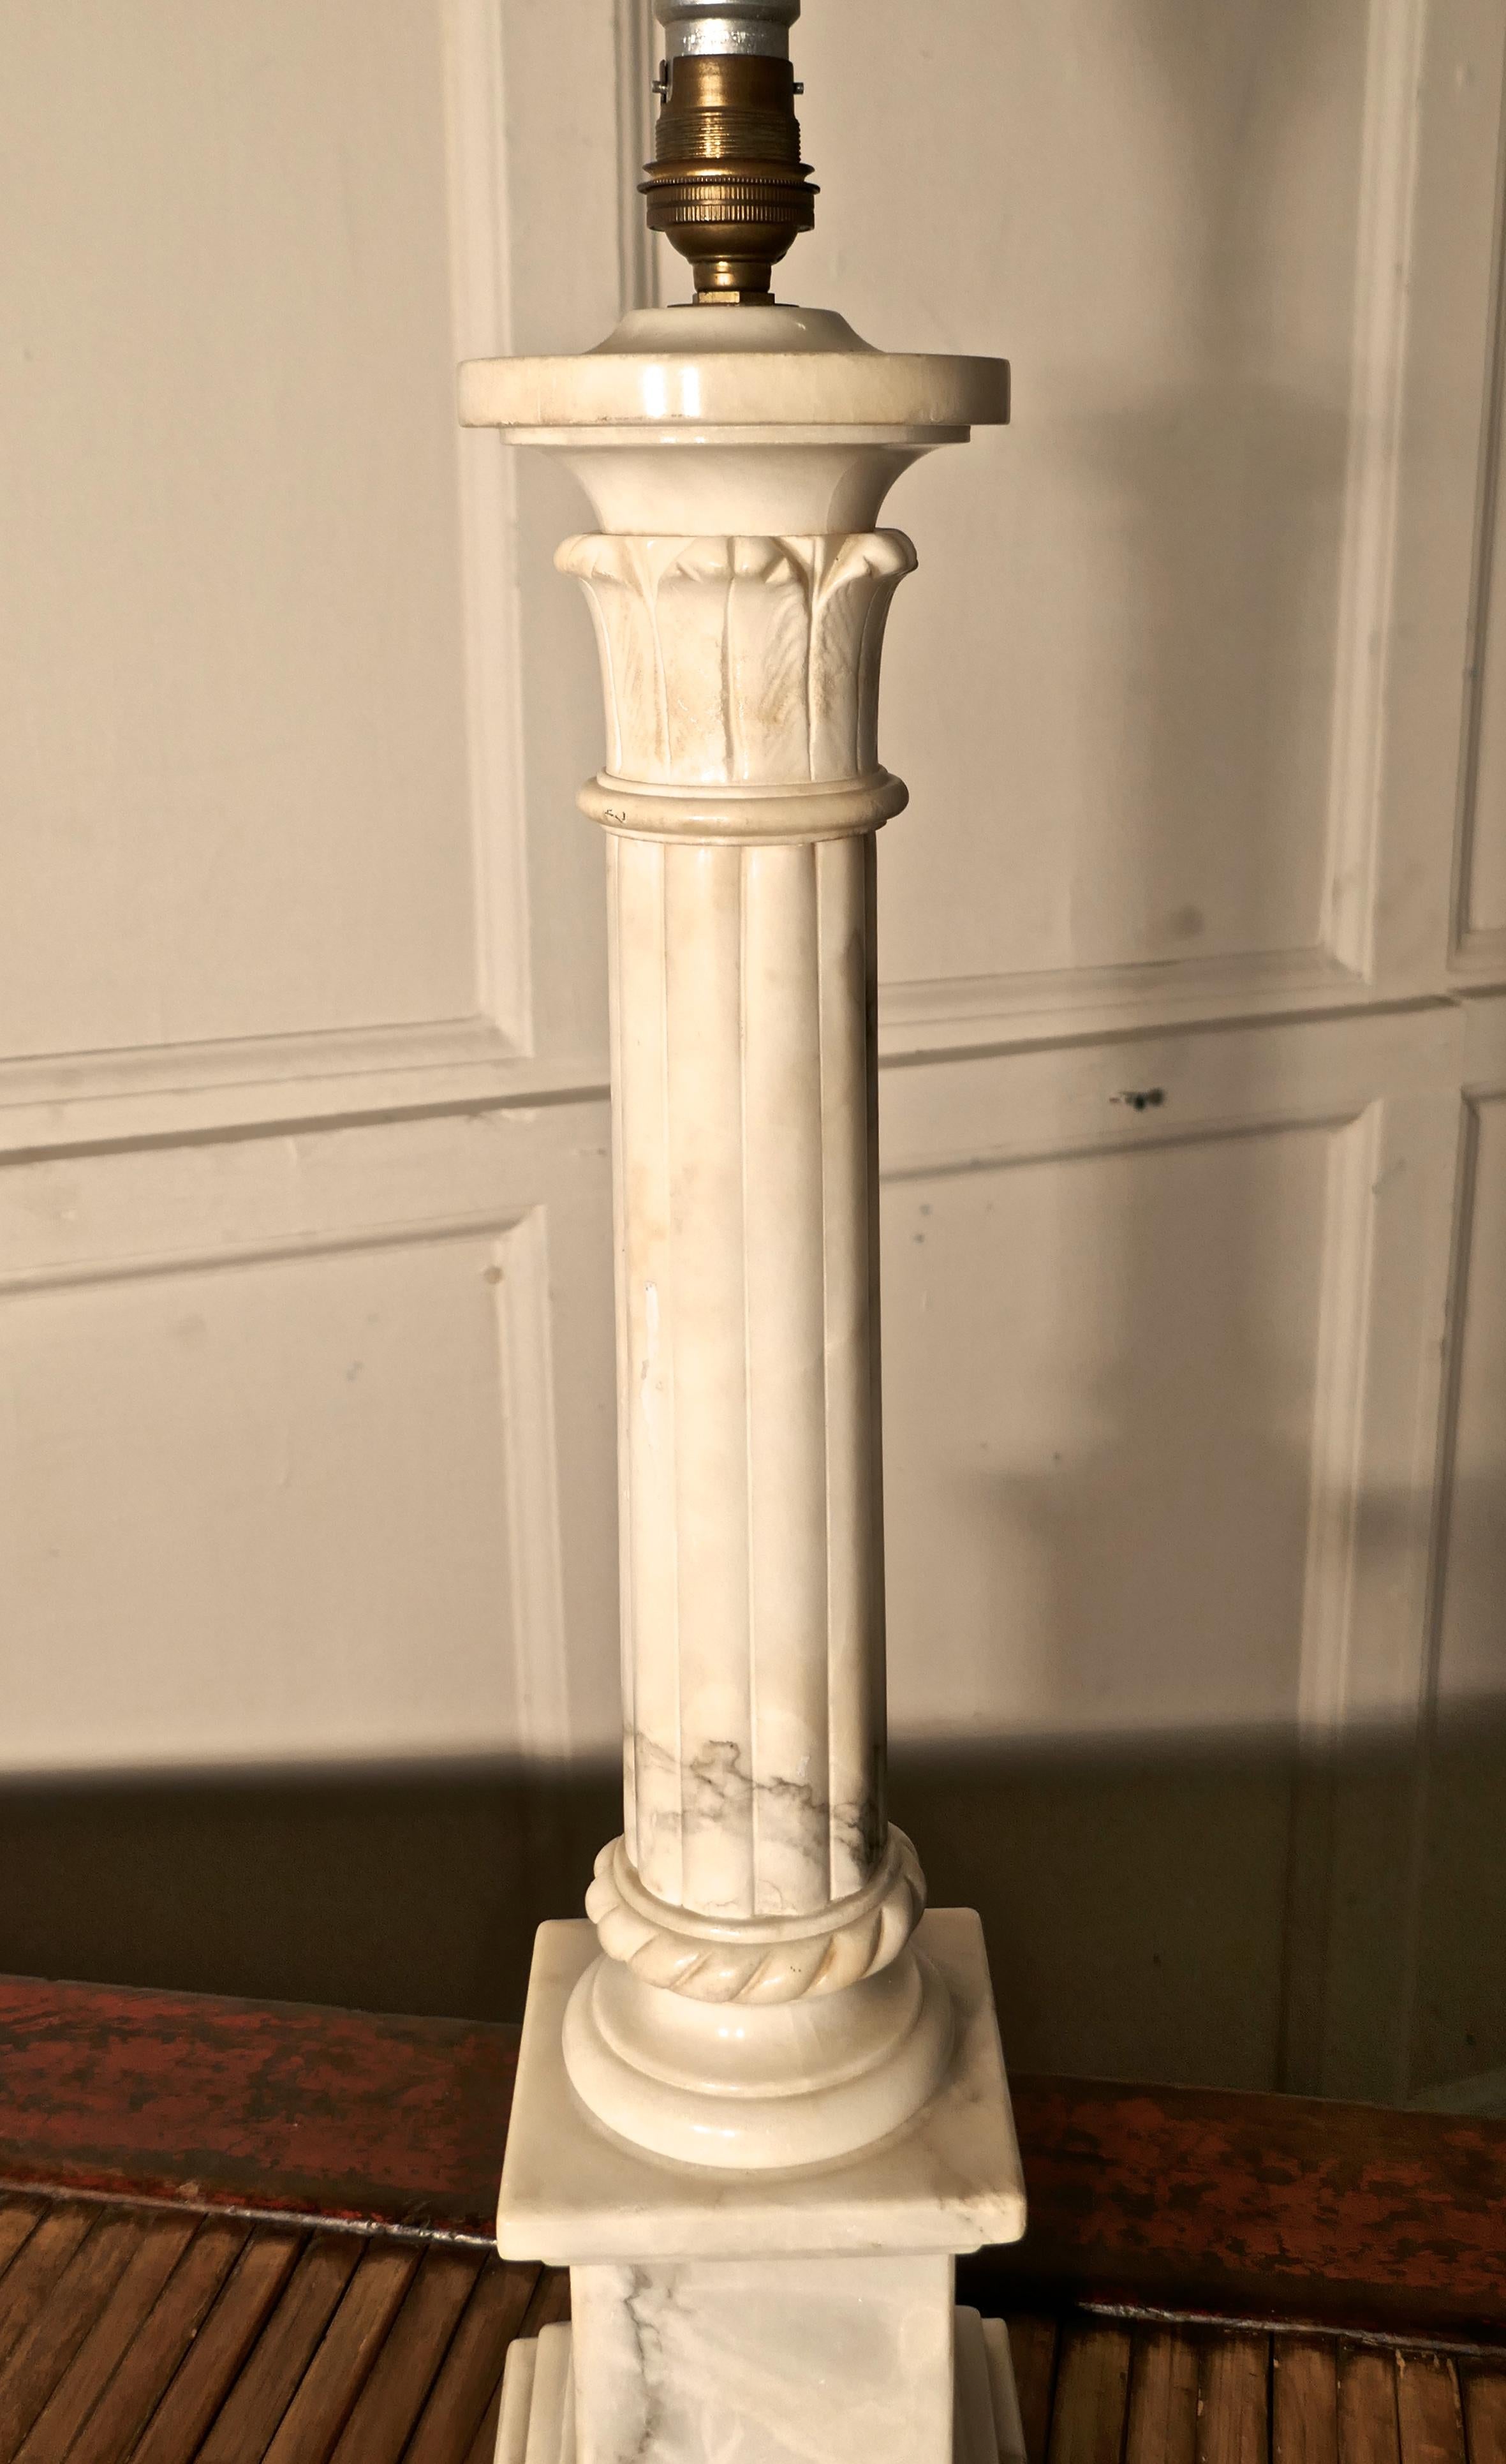 Grande lampe de table à colonne corinthienne en marbre blanc

Il s'agit d'une pièce lourde réalisée en marbre massif, la lampe a une seule colonne cannelée en marbre de style corinthien posée sur une base en marbre.
Il s'agit d'une pièce très